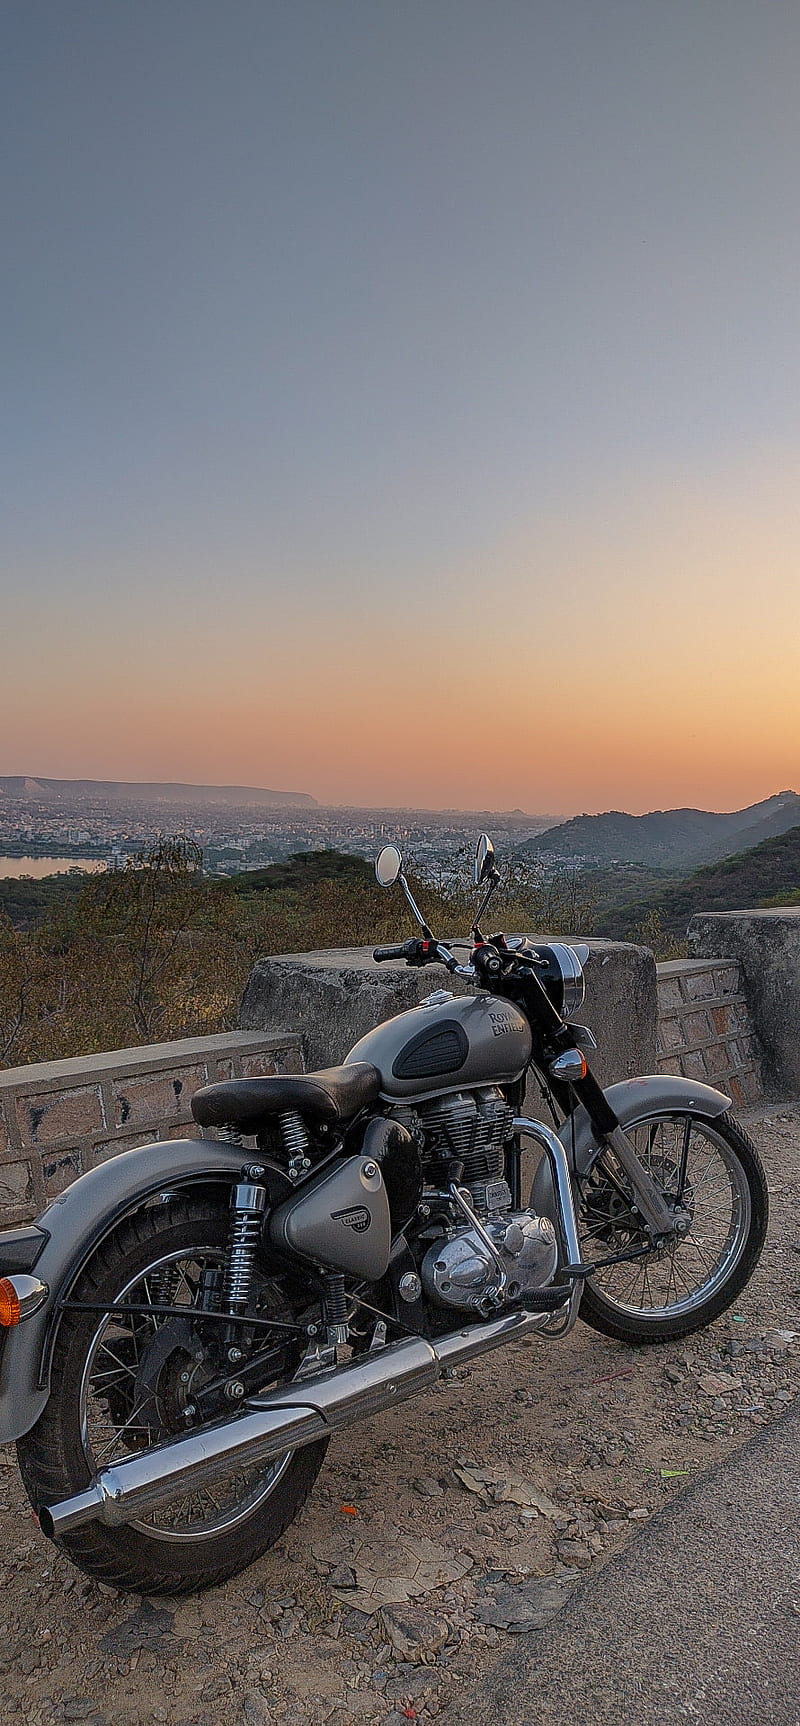 Royal Enfield, bikes, jaipur, sunset, world heritage, HD phone wallpaper